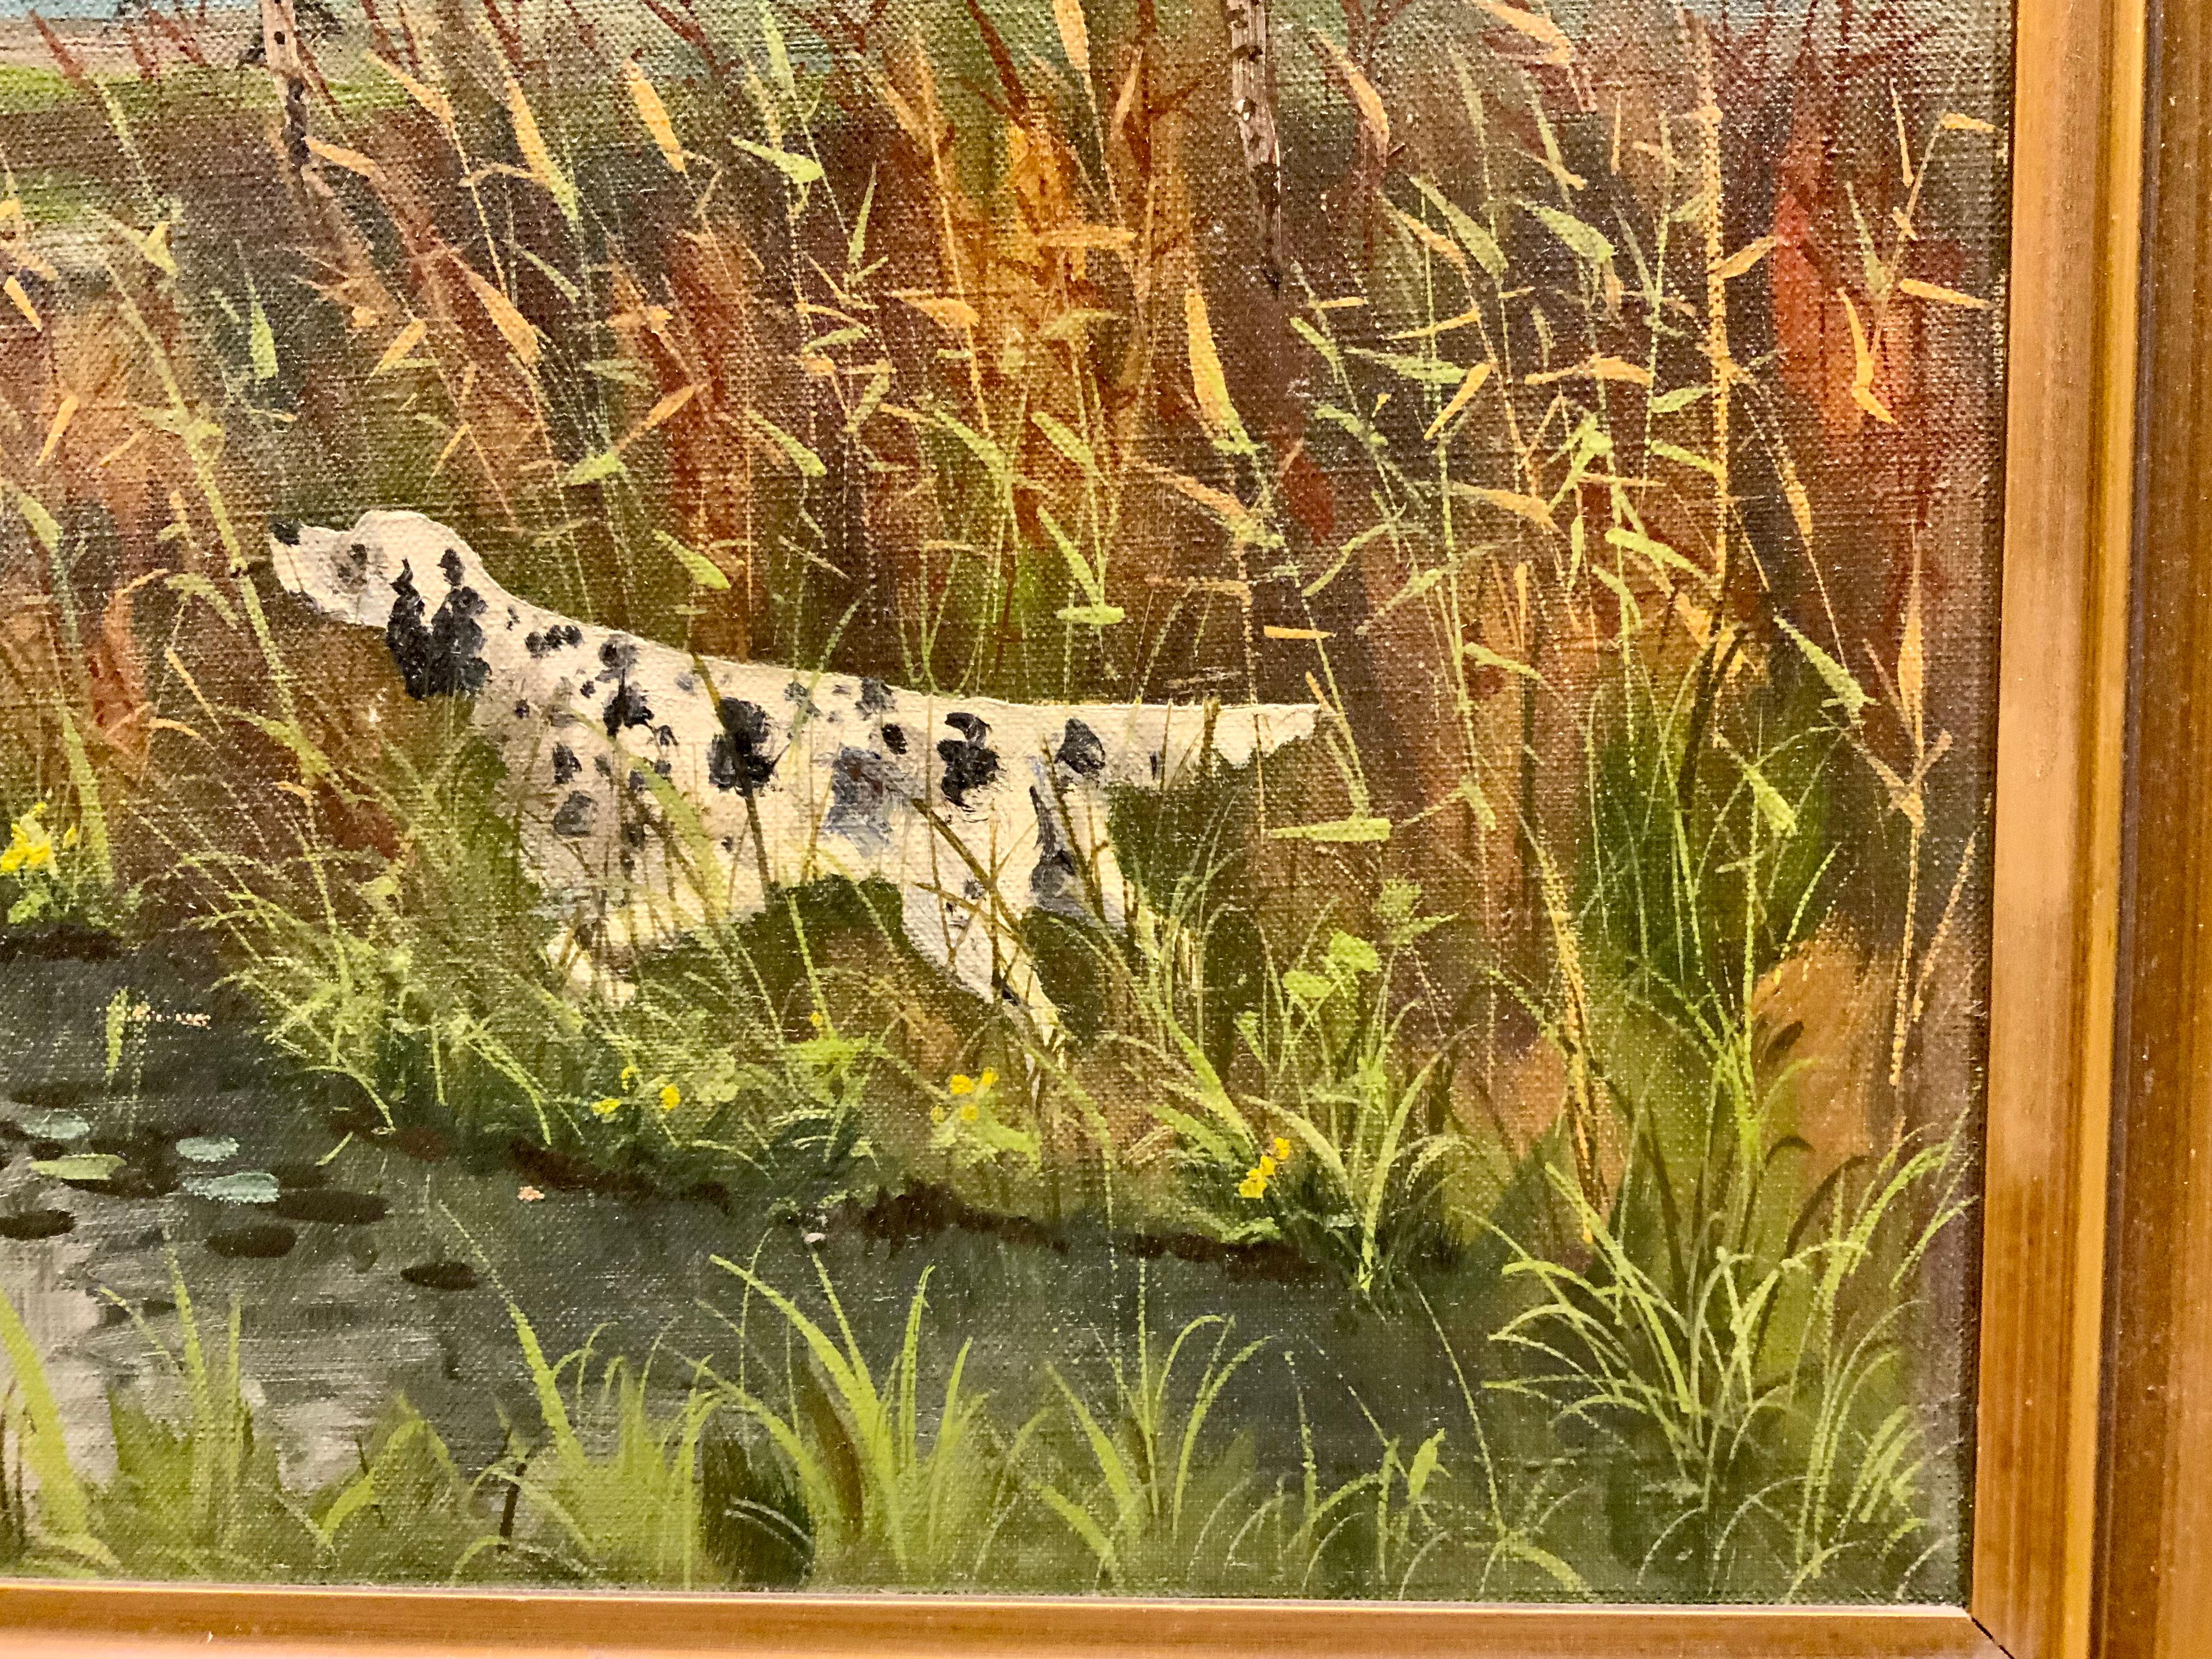 Dieses einzigartige Gemälde richtet sich an Jäger und Hundeliebhaber,
Da es eine besondere Szene mit einem Jagdhund darstellt
Enten. Der Himmel ist gut gemalt und die Gesamtansicht eines
Die sumpfige Jagdszene ist perfekt für jemanden, der gerne
Die